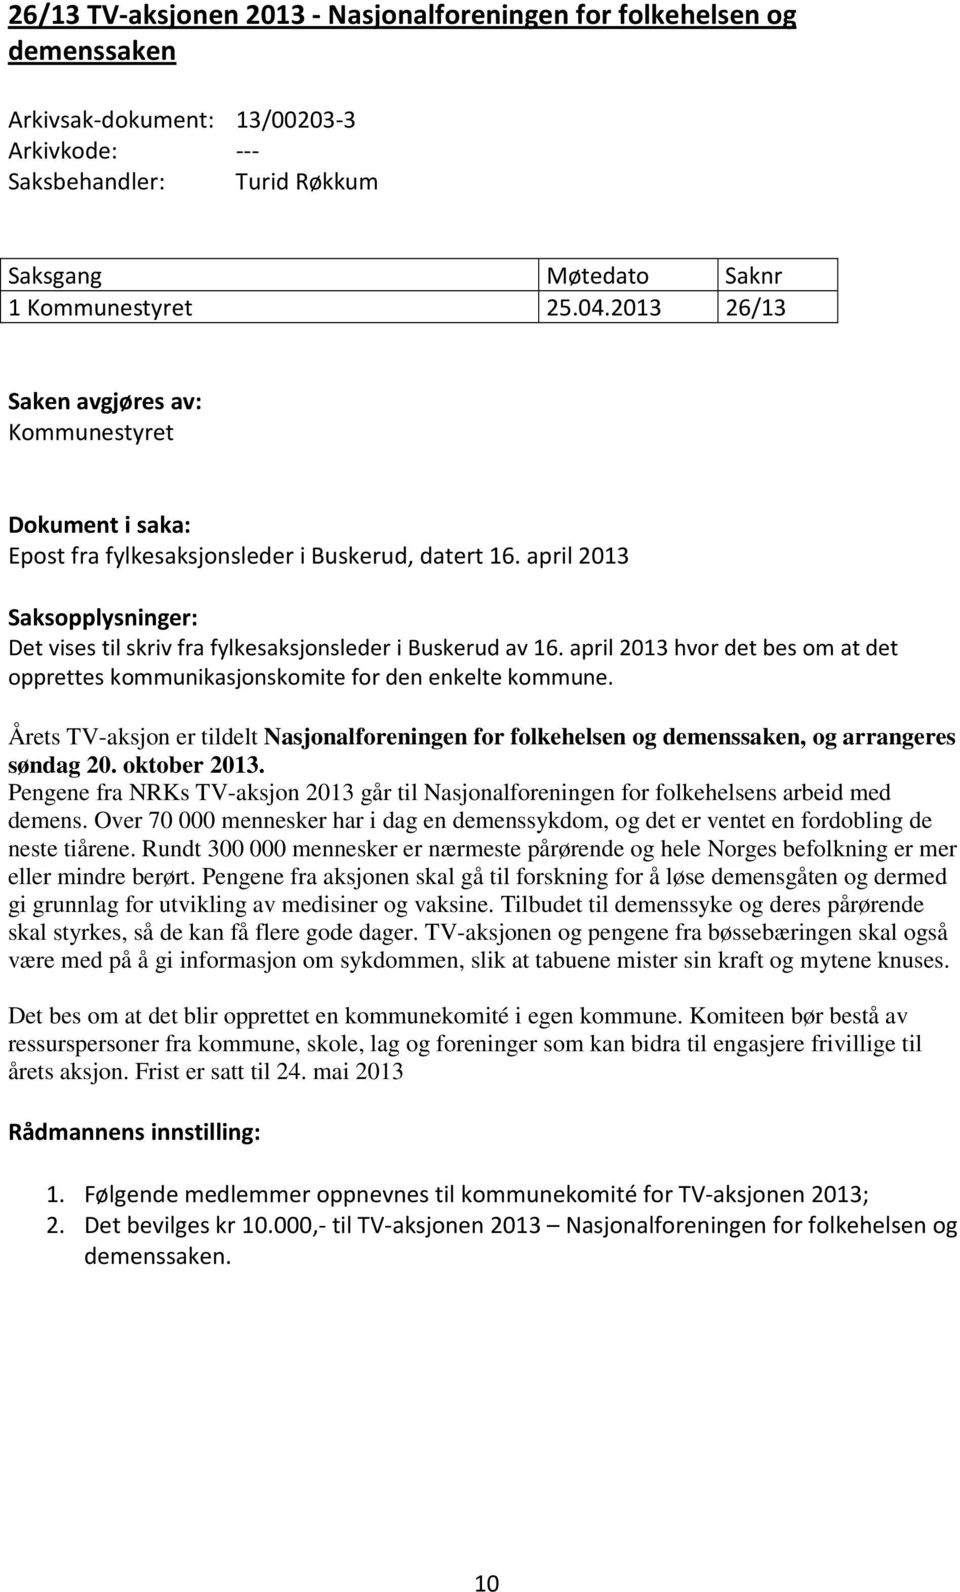 april 2013 Saksopplysninger: Det vises til skriv fra fylkesaksjonsleder i Buskerud av 16. april 2013 hvor det bes om at det opprettes kommunikasjonskomite for den enkelte kommune.